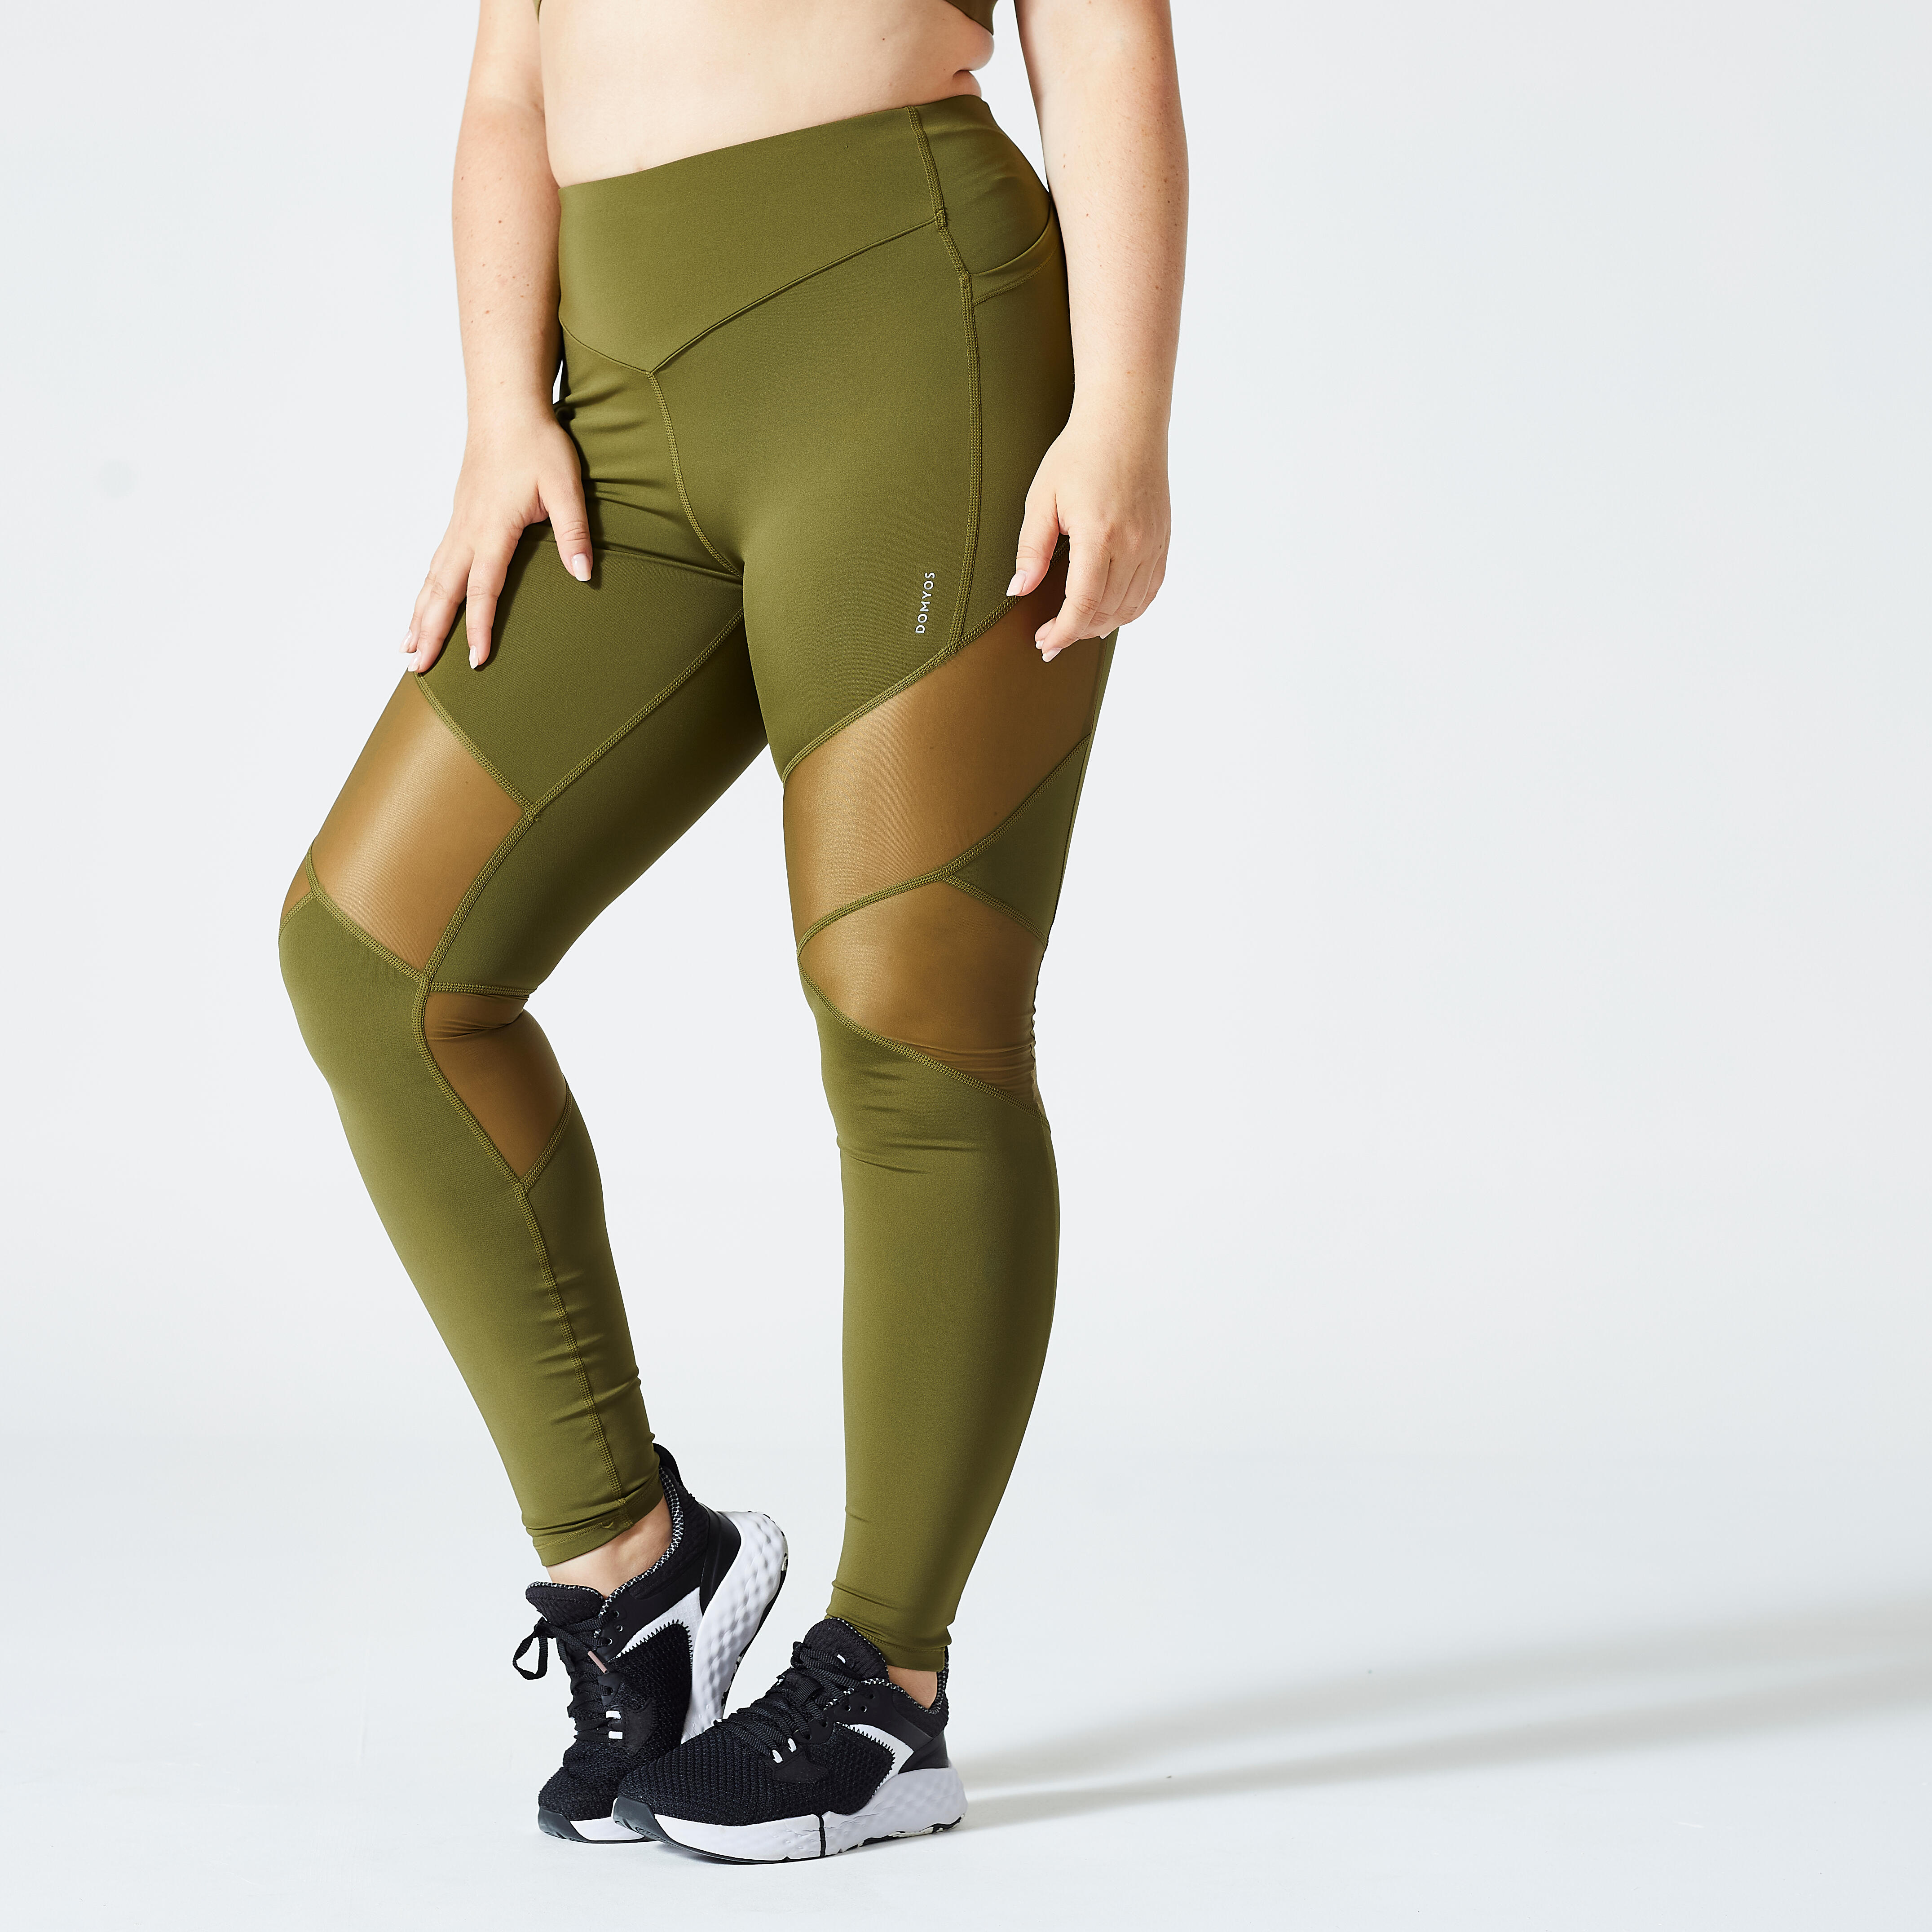 Share 257+ decathlon leggings womens